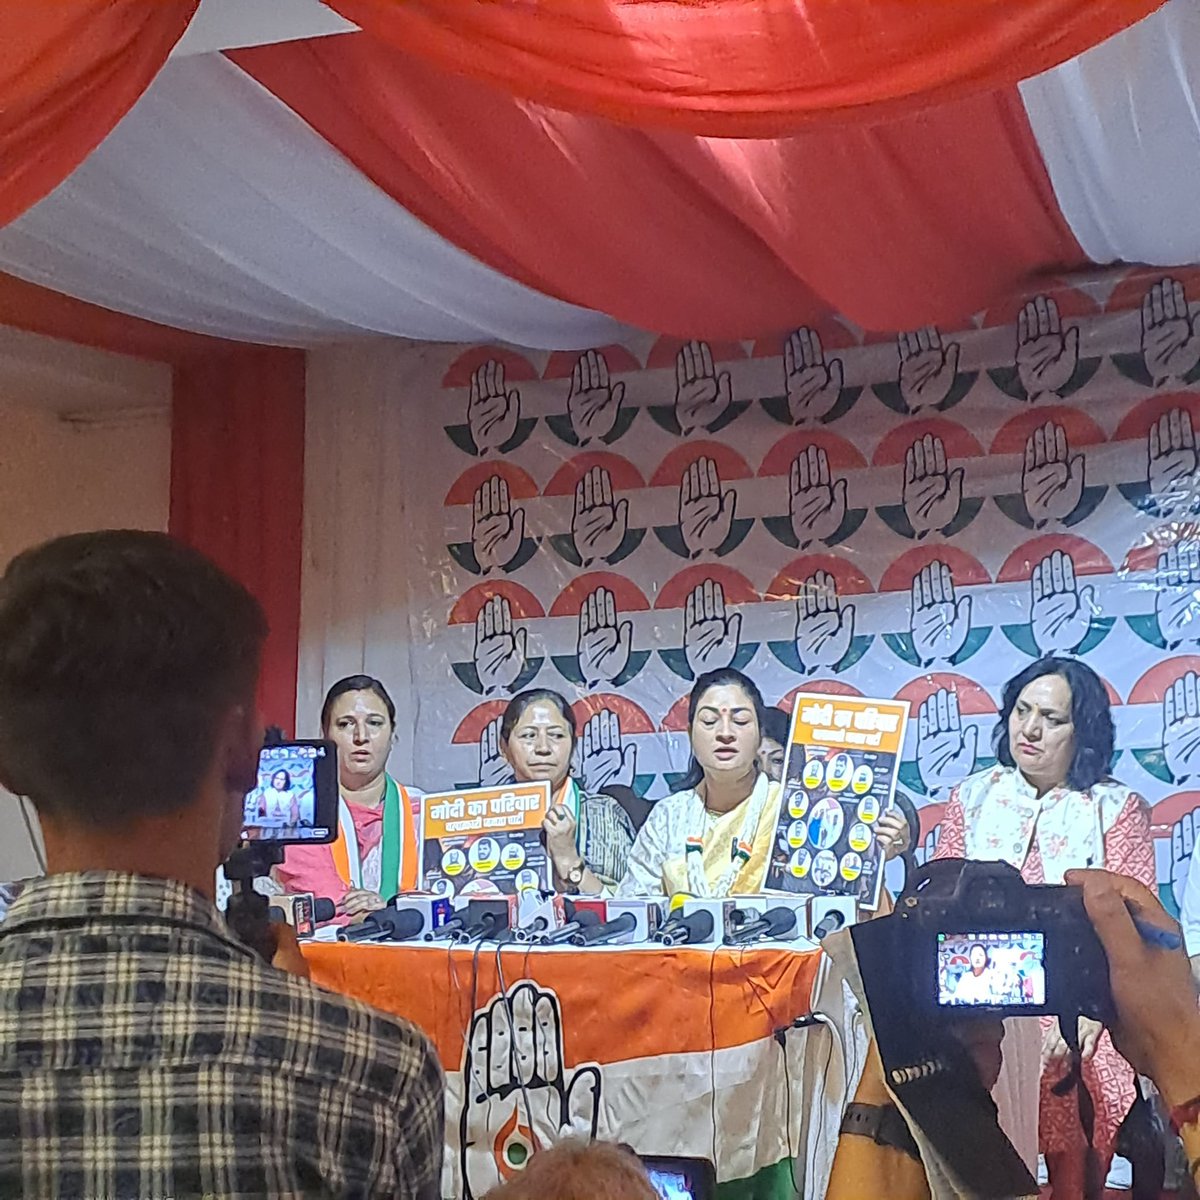 आज अखिल भारतीय महिला कांग्रेस की राष्ट्रीय अध्यक्ष @LambaAlka जी ने हिमाचल प्रदेश के मंडी में प्रेस वार्ता को संबोधित किया और राज्य के हित से जुड़े विभिन्न मुद्दों पर मीडिया के साथियों से चर्चा की। इस अवसर पर हिमाचल प्रदेश महिला कांग्रेस की अध्यक्ष जैनब चंदेल जी एवं महिला